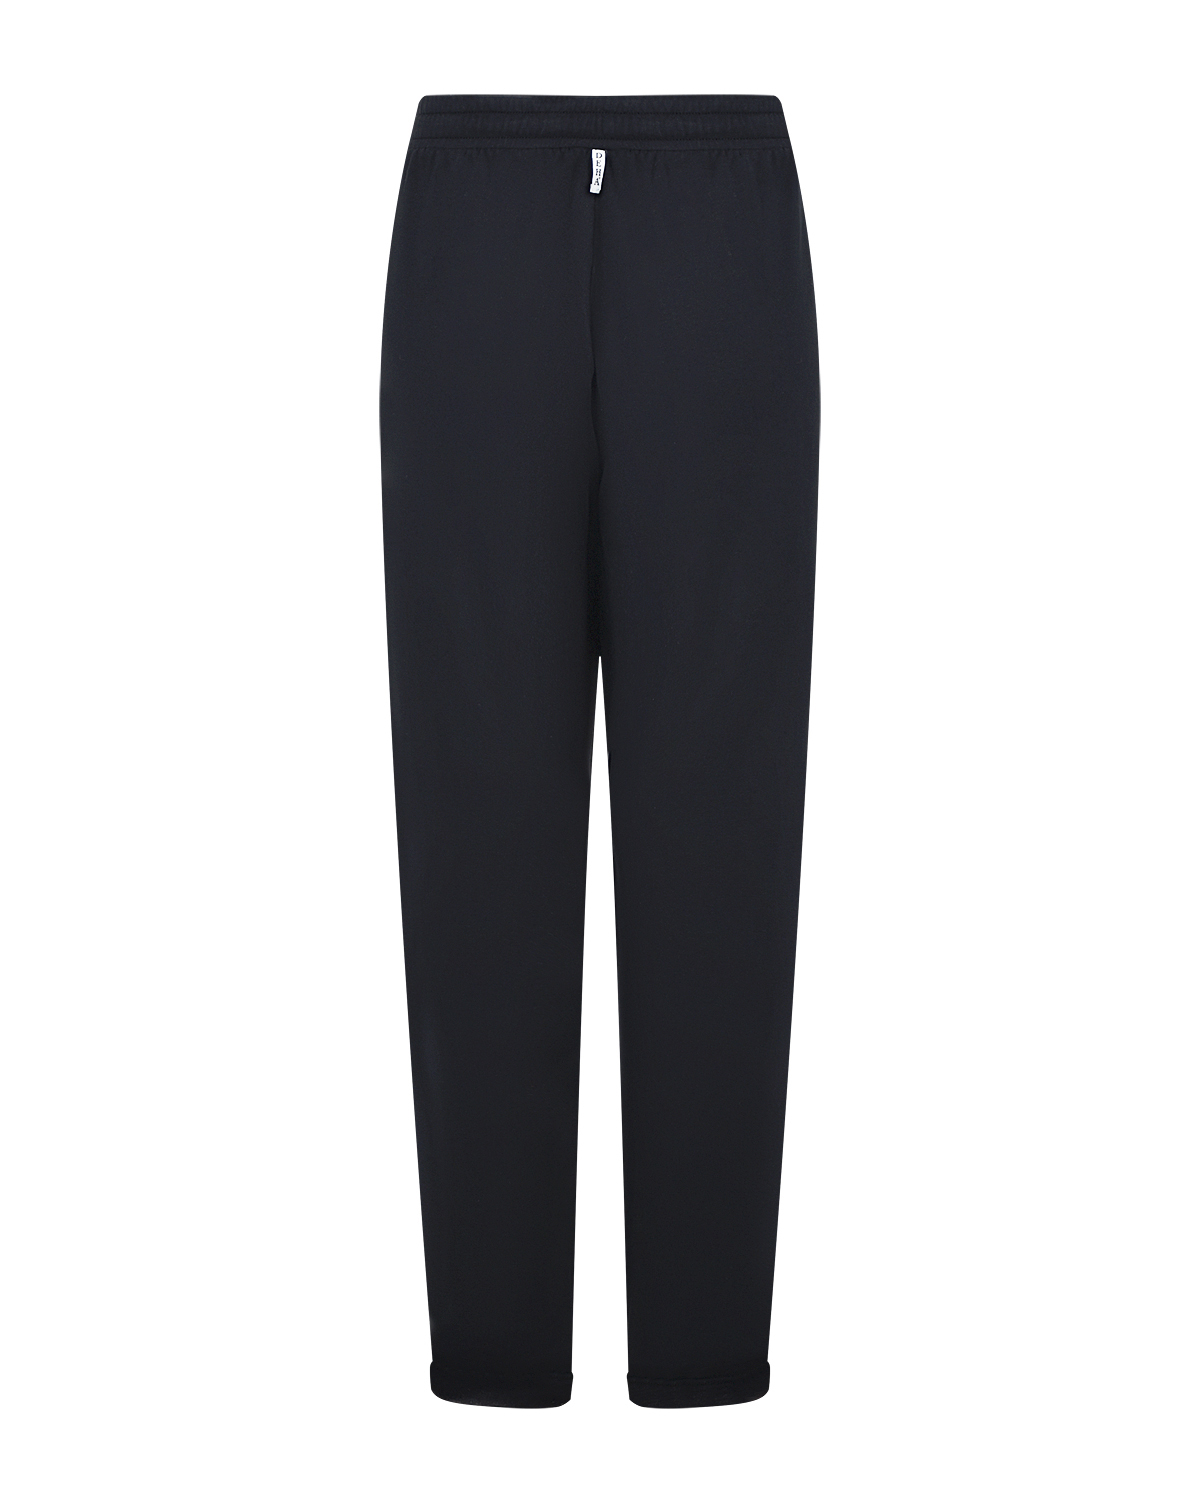 Черные спортивные брюки с поясом на кулиске Deha, размер 40, цвет черный - фото 5